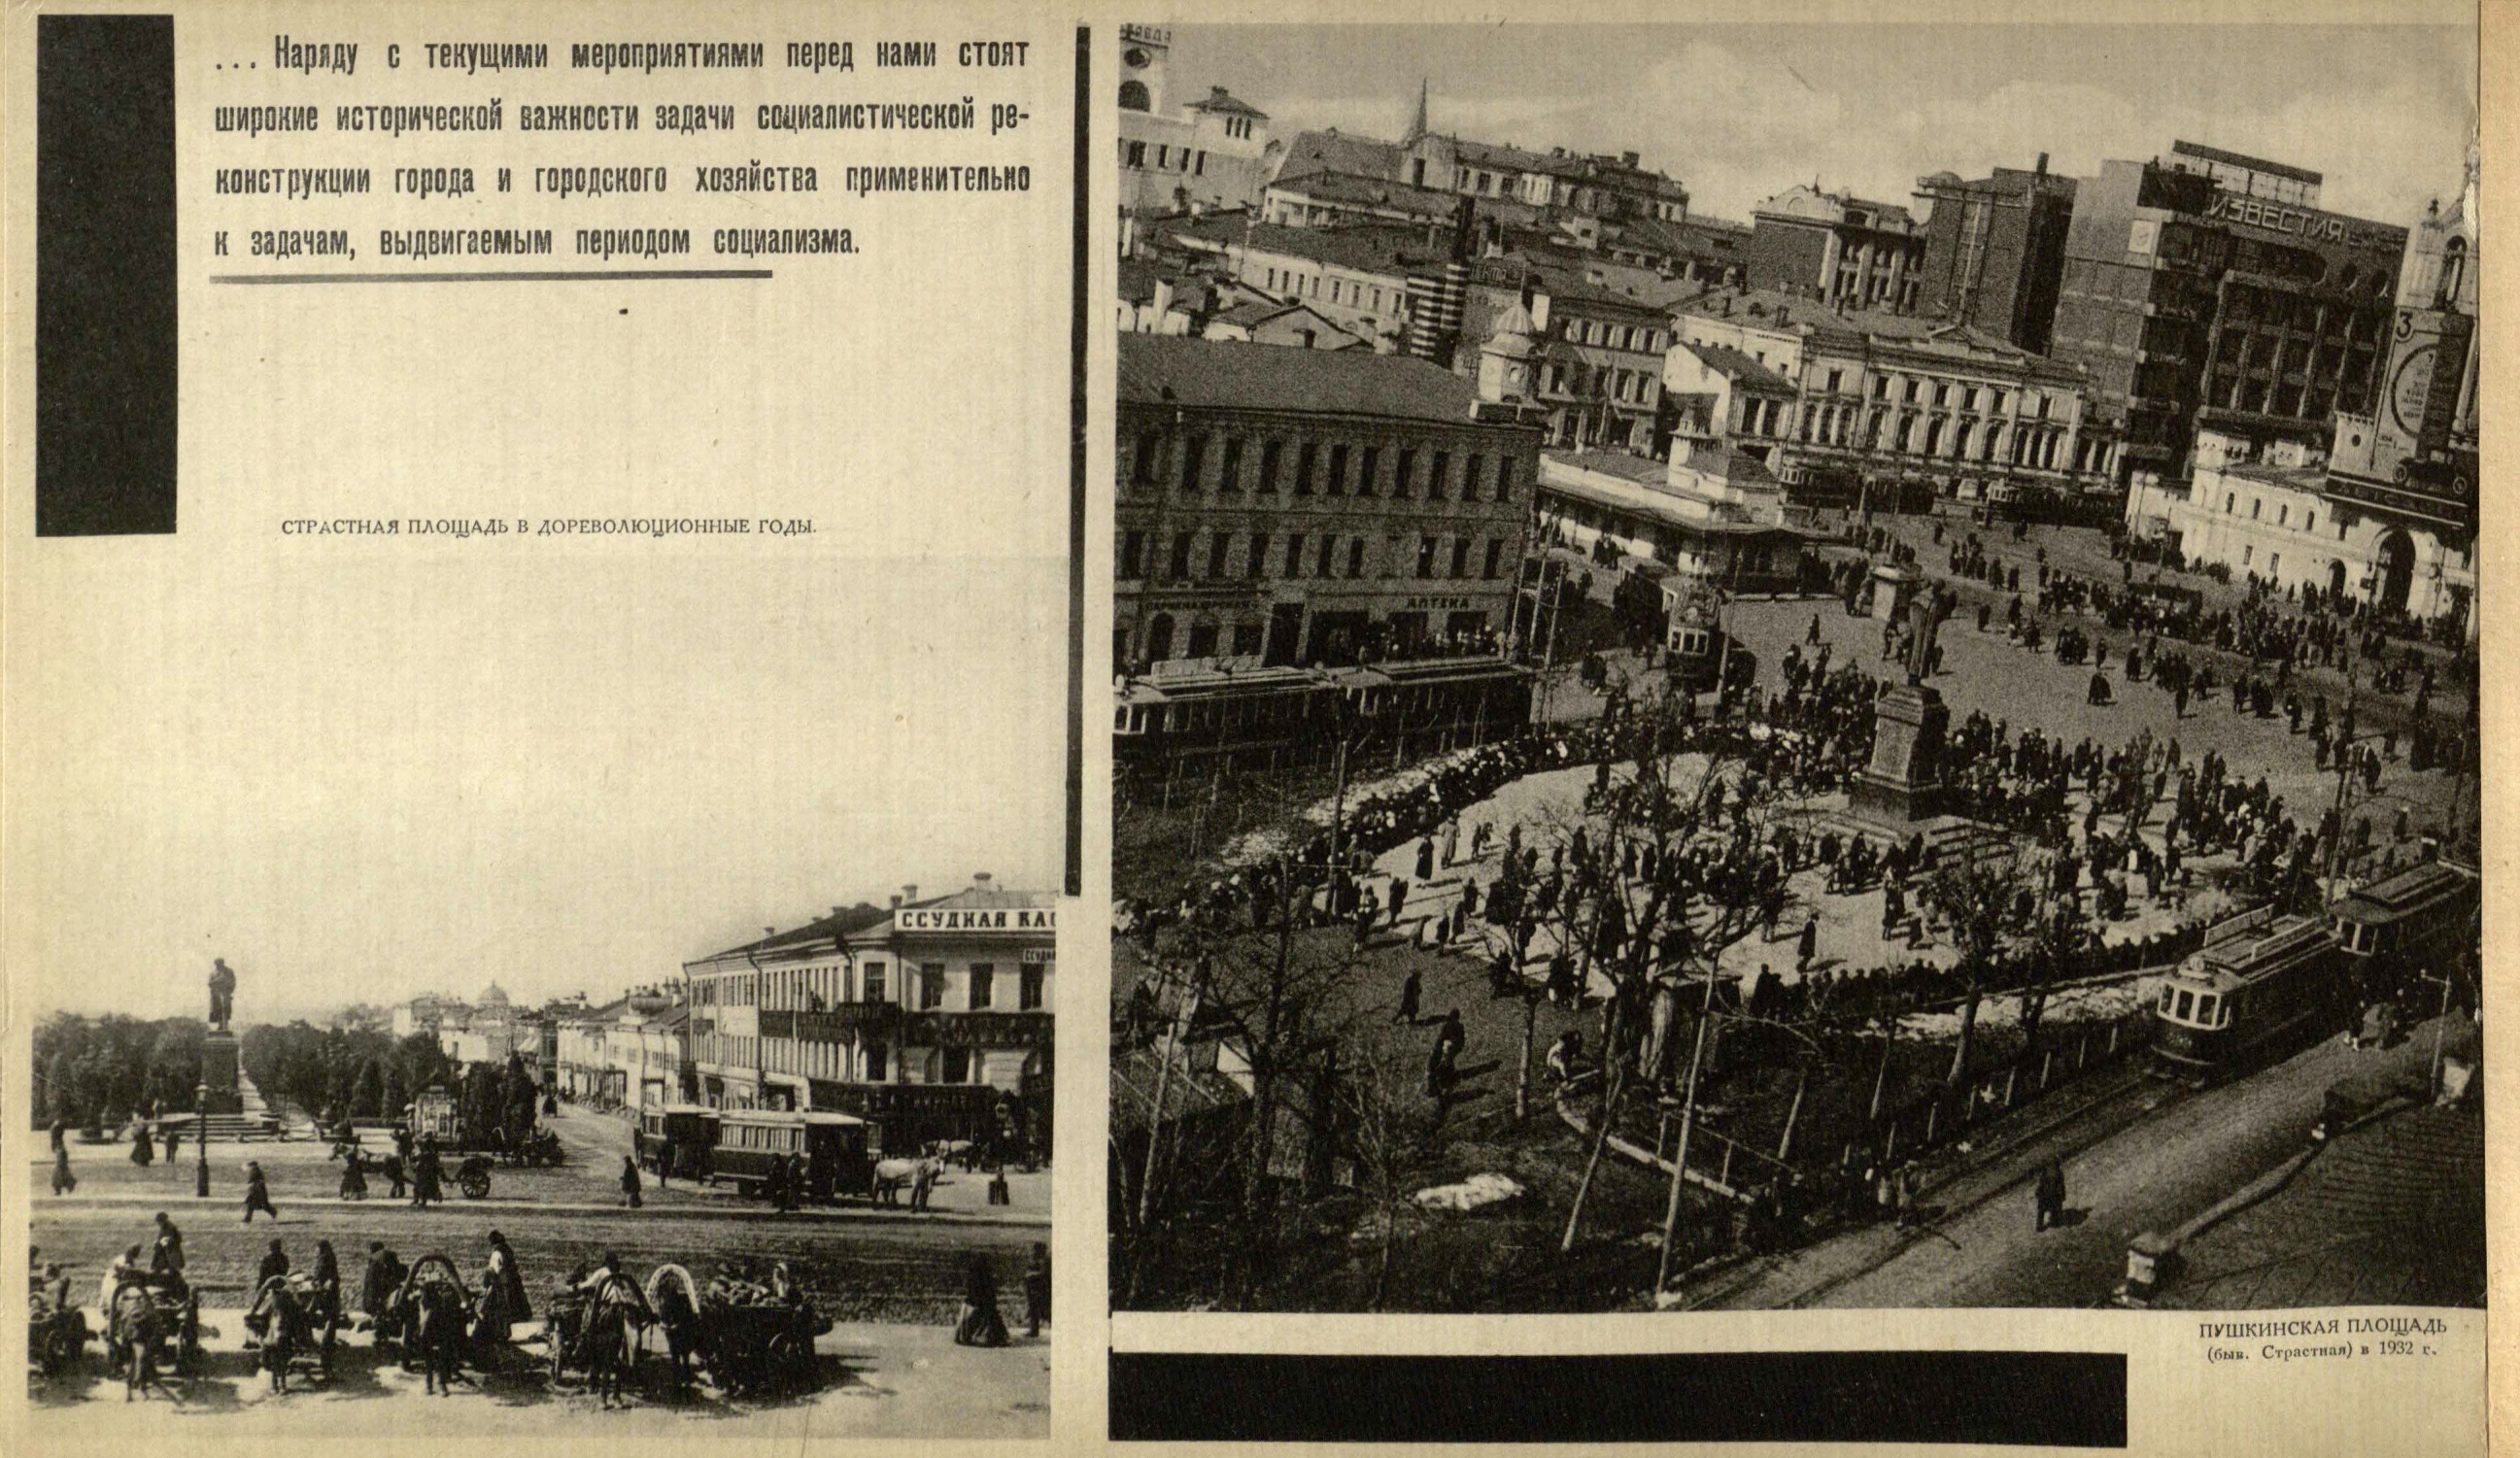 Страстная площадь в дореволюционные годы. Пушкинская площадь (быв. Страстная) в 1932 г.